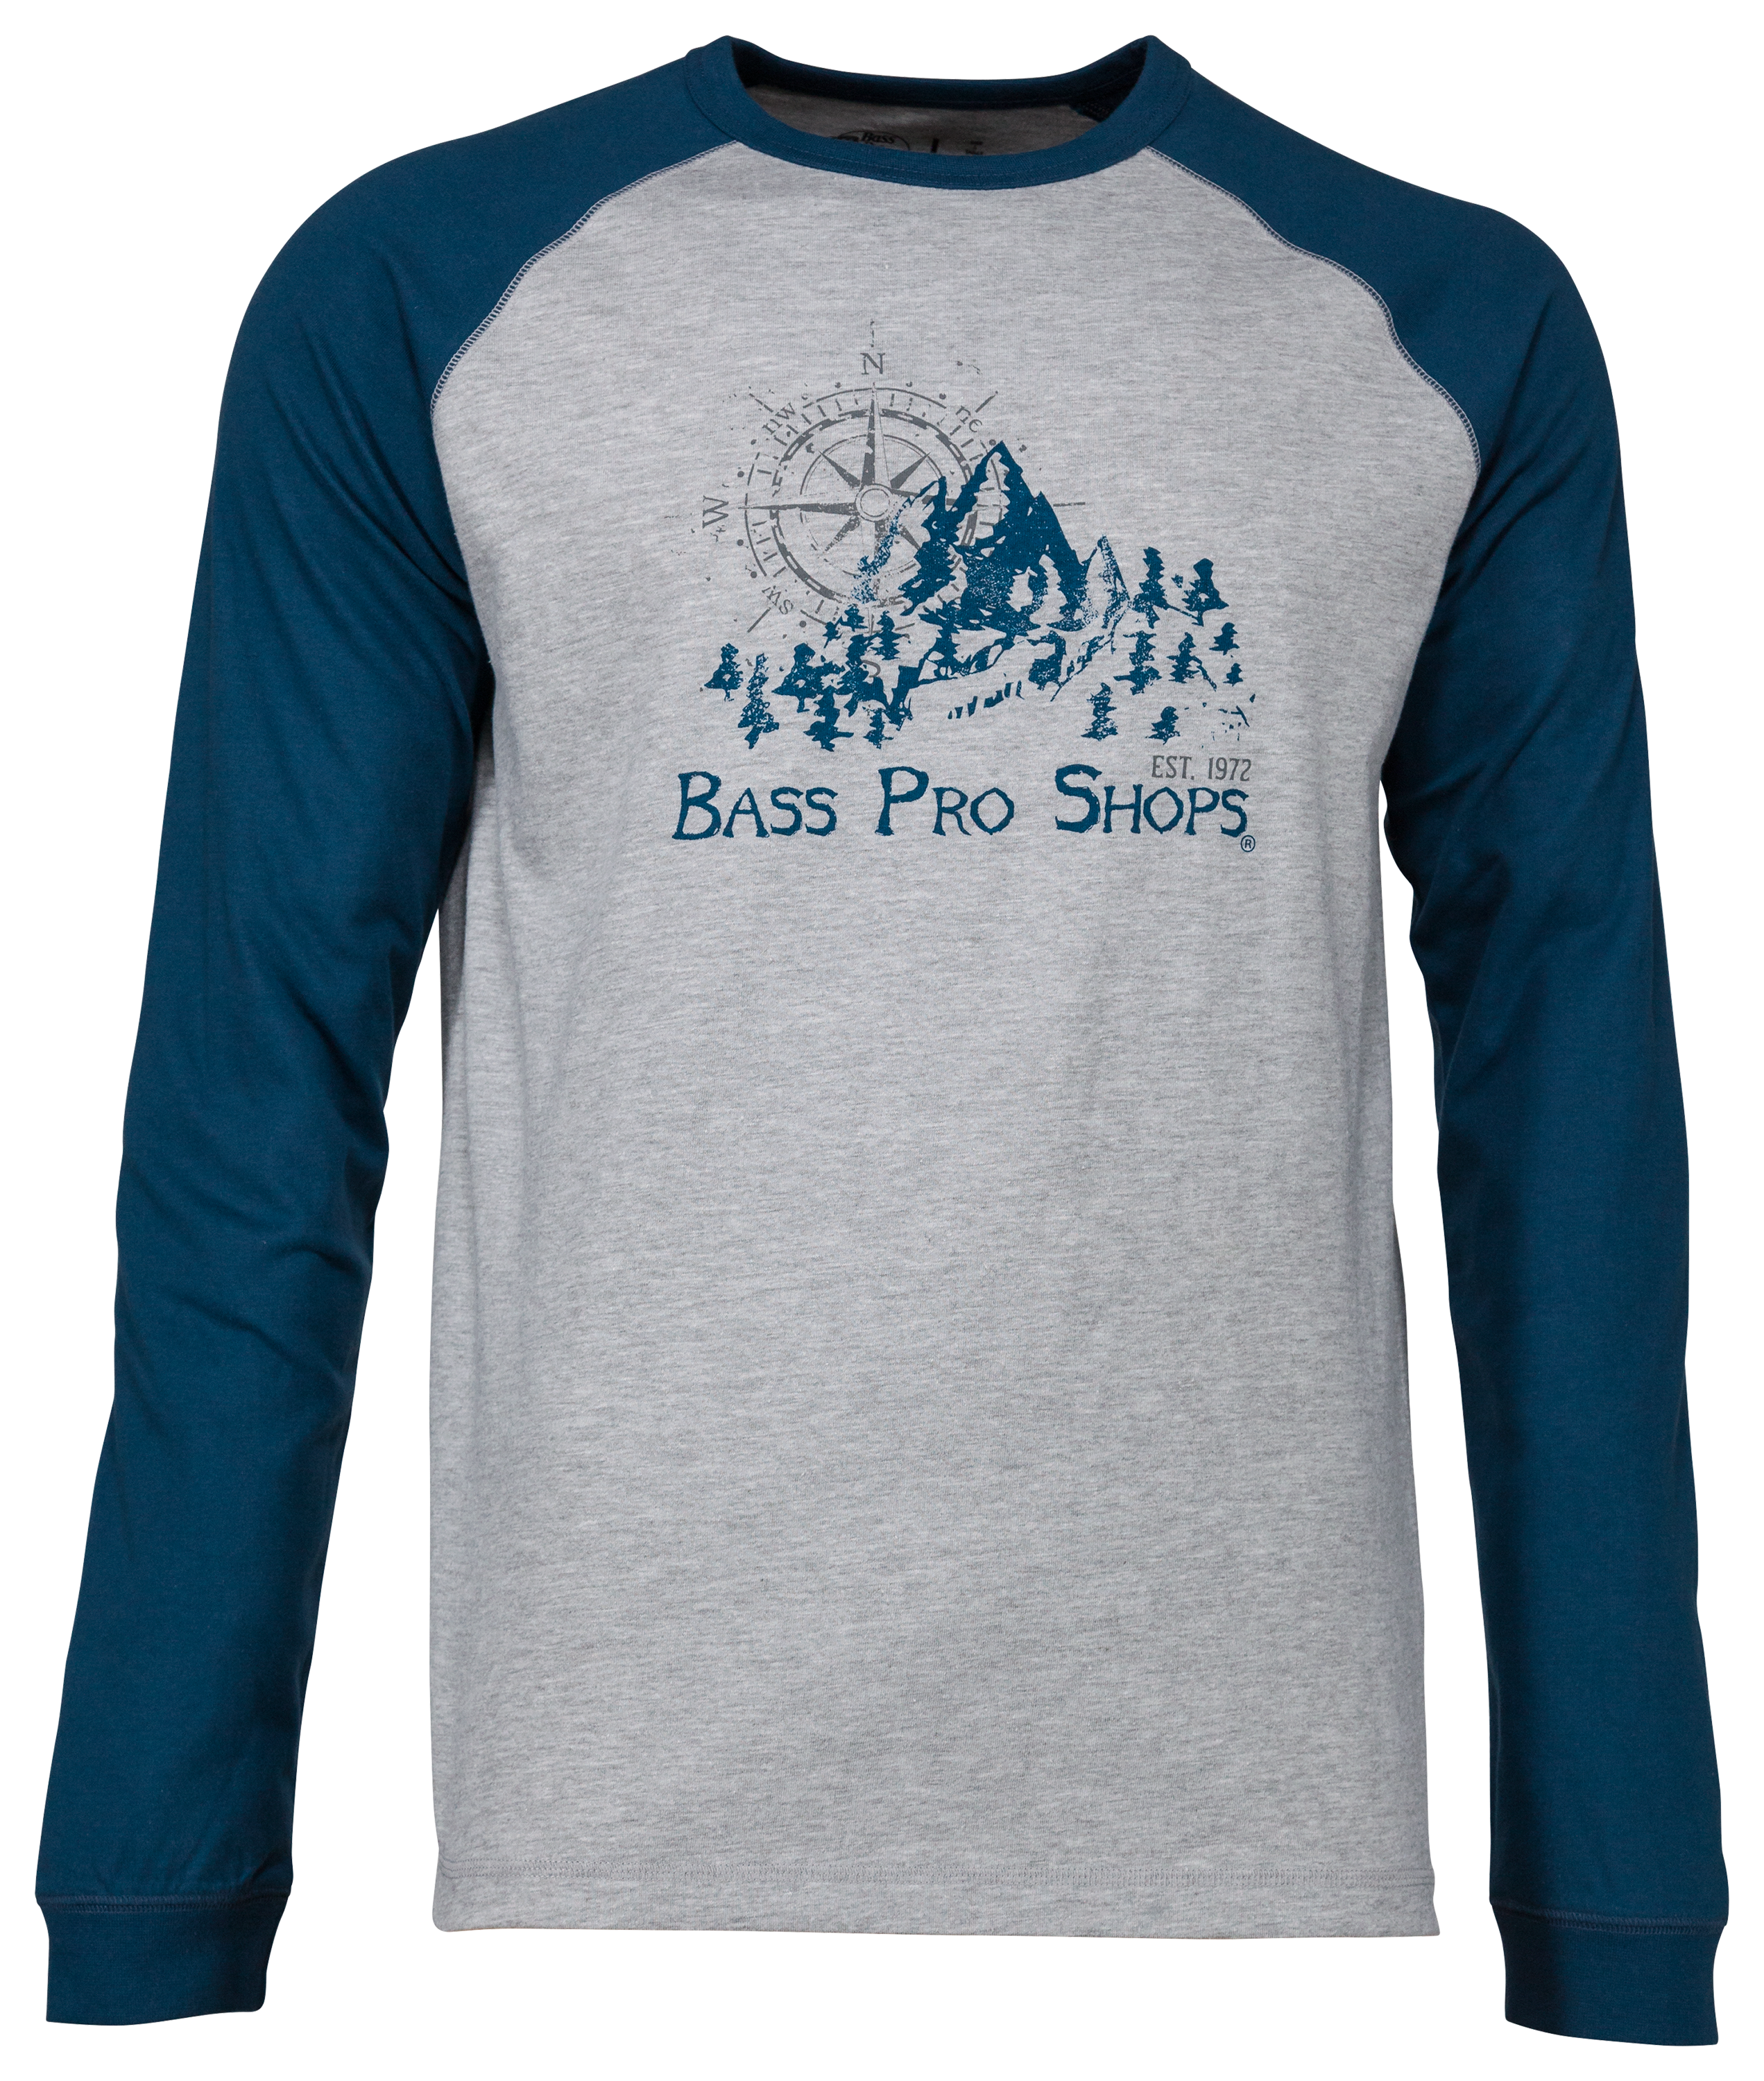 Bass Pro Shops Compass Rose Raglan Long-Sleeve T-Shirt for Men